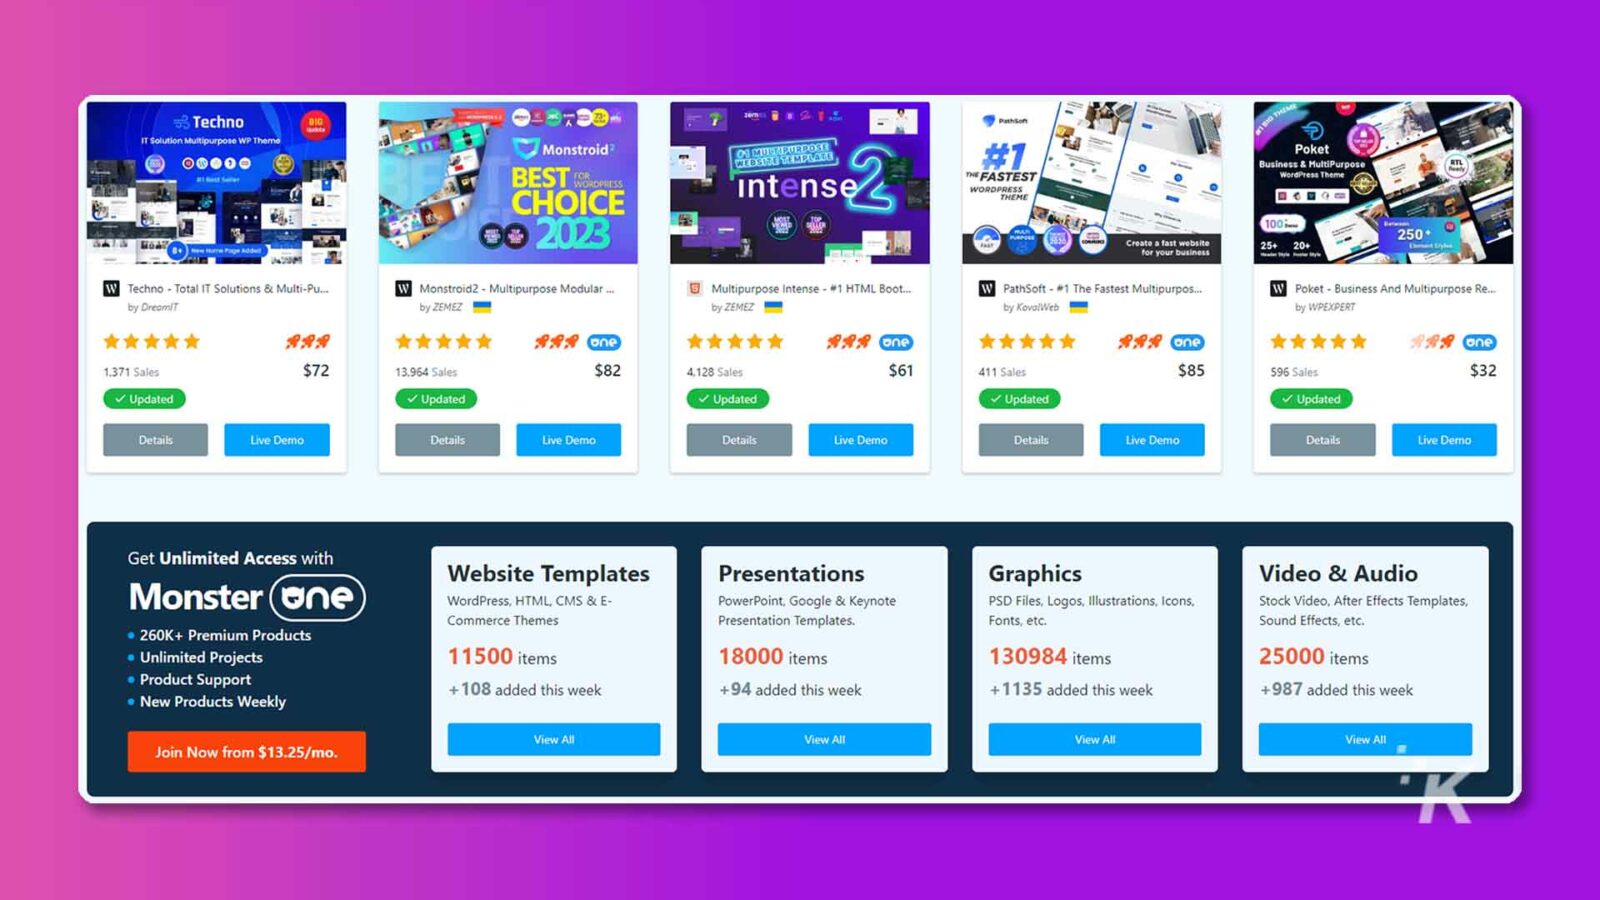 รูปภาพนี้กำลังโฆษณาเทมเพลตเว็บไซต์และผลิตภัณฑ์ต่างๆ ที่มีให้ซื้อจาก Monster โดยมีรายละเอียดเกี่ยวกับจำนวนการขายและราคาสำหรับแต่ละผลิตภัณฑ์ Full Text: Techno athSont IT Solution Multipurpose WP Theme Monstroid OJ MULTIPURPOSE Poket BEST .MISS WEBSITE TEMPL Business & MultiPurpose THE FASTEST RTL WordPress Theme CHOICE Intense WORDPRESS THEME # 2023 100% 250+ สร้างเว็บไซต์ที่รวดเร็วสำหรับธุรกิจของคุณ 25+ 20+ W Techno - Total IT Solutions & Multi-Pu ... W Monstroid2 - Multipurpose Modular ... 6 Multipurpose Intense - #1. HTML Boot ... W PathSoft - #1 Multipurpos ที่เร็วที่สุด W Poket - ธุรกิจและอเนกประสงค์ ... โดย DreamIT โดย ZEMEZ โดย ZEMEZ โดย KovalWeb โดย WPEXPERT ***** ***** หนึ่ง ***** หนึ่ง ***** หนึ่ง ***** หนึ่ง 1.371 การขาย $72 13.964 การขาย $82 4,128 การขาย $61 411 การขาย $85 596 การขาย $32 อัปเดต อัปเดต / อัปเดต อัปเดต / อัปเดต รายละเอียดการสาธิตสด รายละเอียดการสาธิตสด รายละเอียดการสาธิตสด รายละเอียดการสาธิตสด การสาธิตสด รับ การเข้าถึงไม่จำกัดด้วย Monster (หนึ่งเว็บไซต์ เทมเพลต การนำเสนอ กราฟิก วิดีโอและเสียง WordPress, HTML, CMS & E- PowerPoint, Google & ไฟล์ PSD ของ Keynote, โลโก้, ภาพประกอบ, ไอคอน, วิดีโอสต็อก, เทมเพลต After Effects, แบบอักษร, ฯลฯ เอฟเฟกต์เสียง ฯลฯ . . 260K+ Premium Products Commerce Themes Presentation Templates. · Unlimited Projects 11500 items 18000 items 130984 items 25000 items . Product Support . New Products Weekly + 108 added this week +94 added this week +1135 added this week +987 added this week เข้าร่วมทันที จาก $13.25/เดือน ดูทั้งหมด ดูทั้งหมด ดูทั้งหมด ดูทั้งหมด